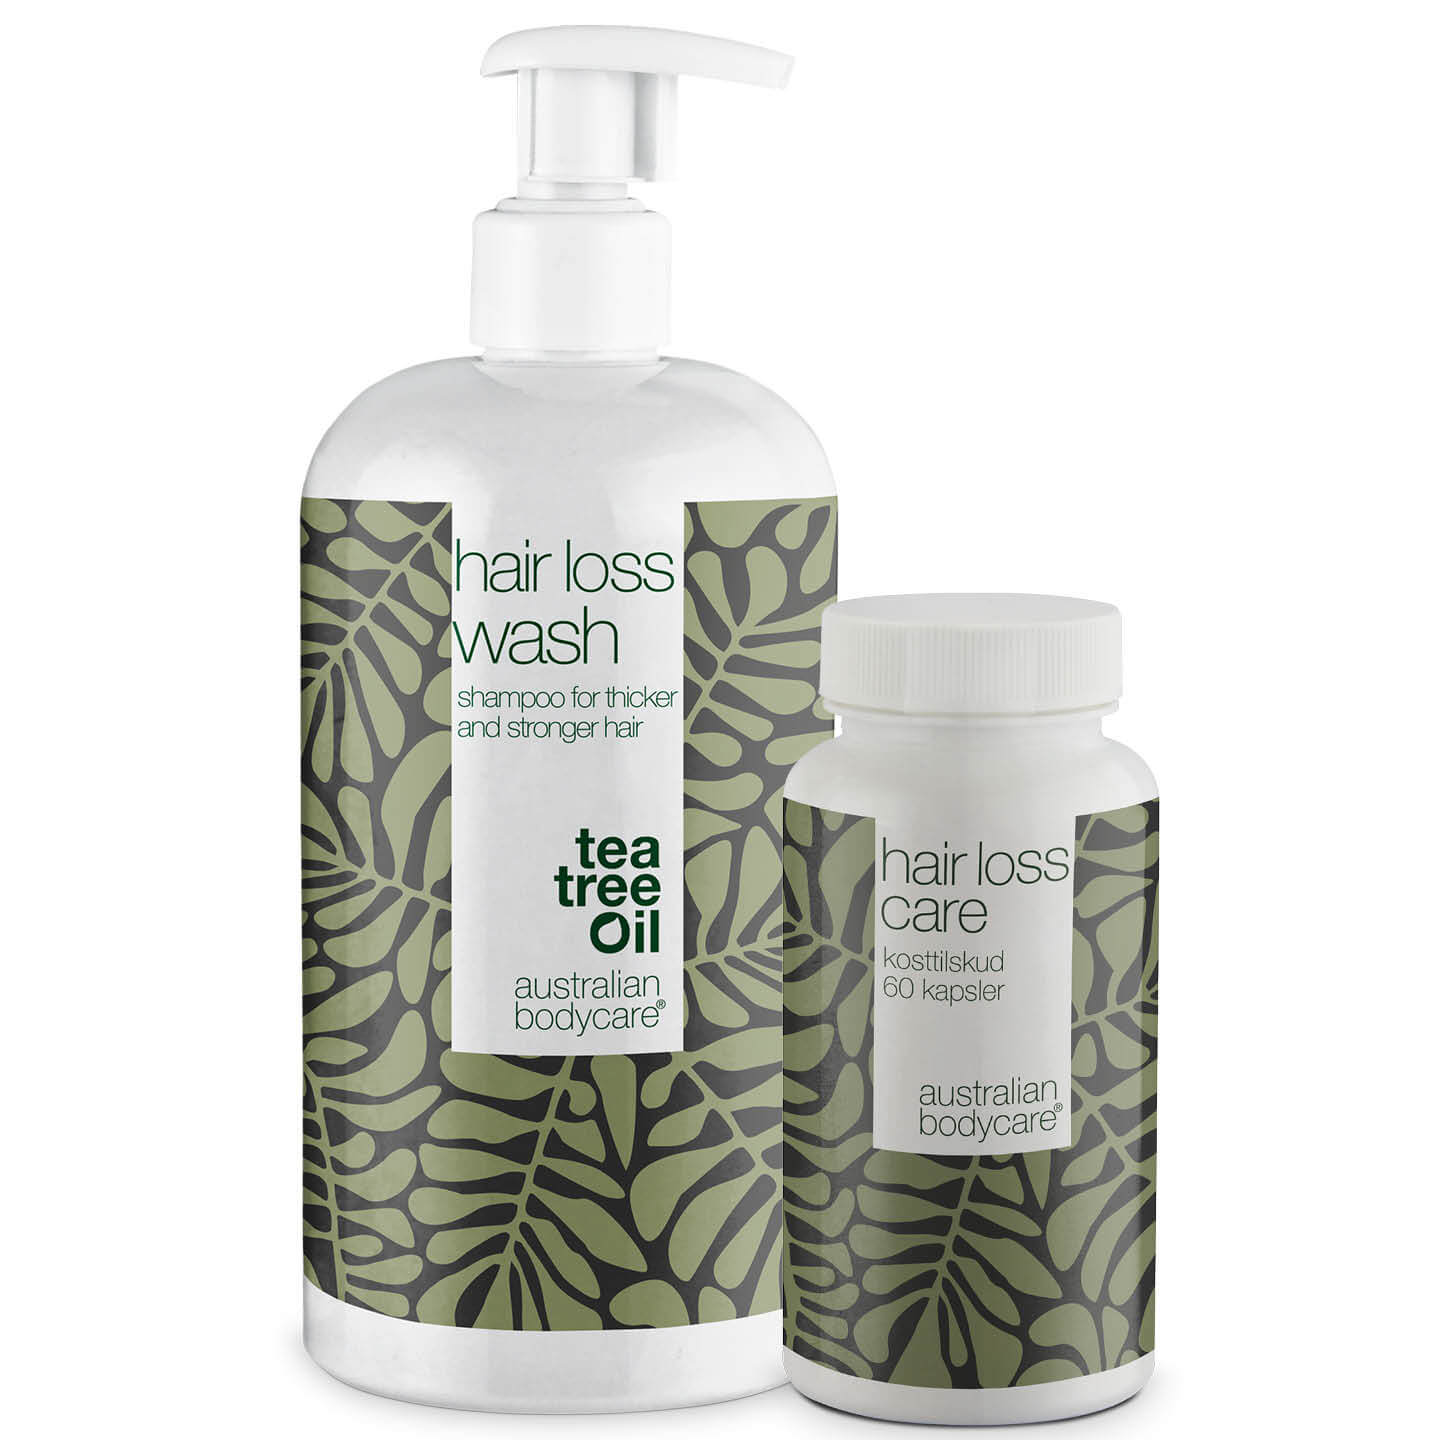 Shampoo en haaruitval vitamines voor dun en fijn haar - Producten voor de verzorging van dun en fijn haar